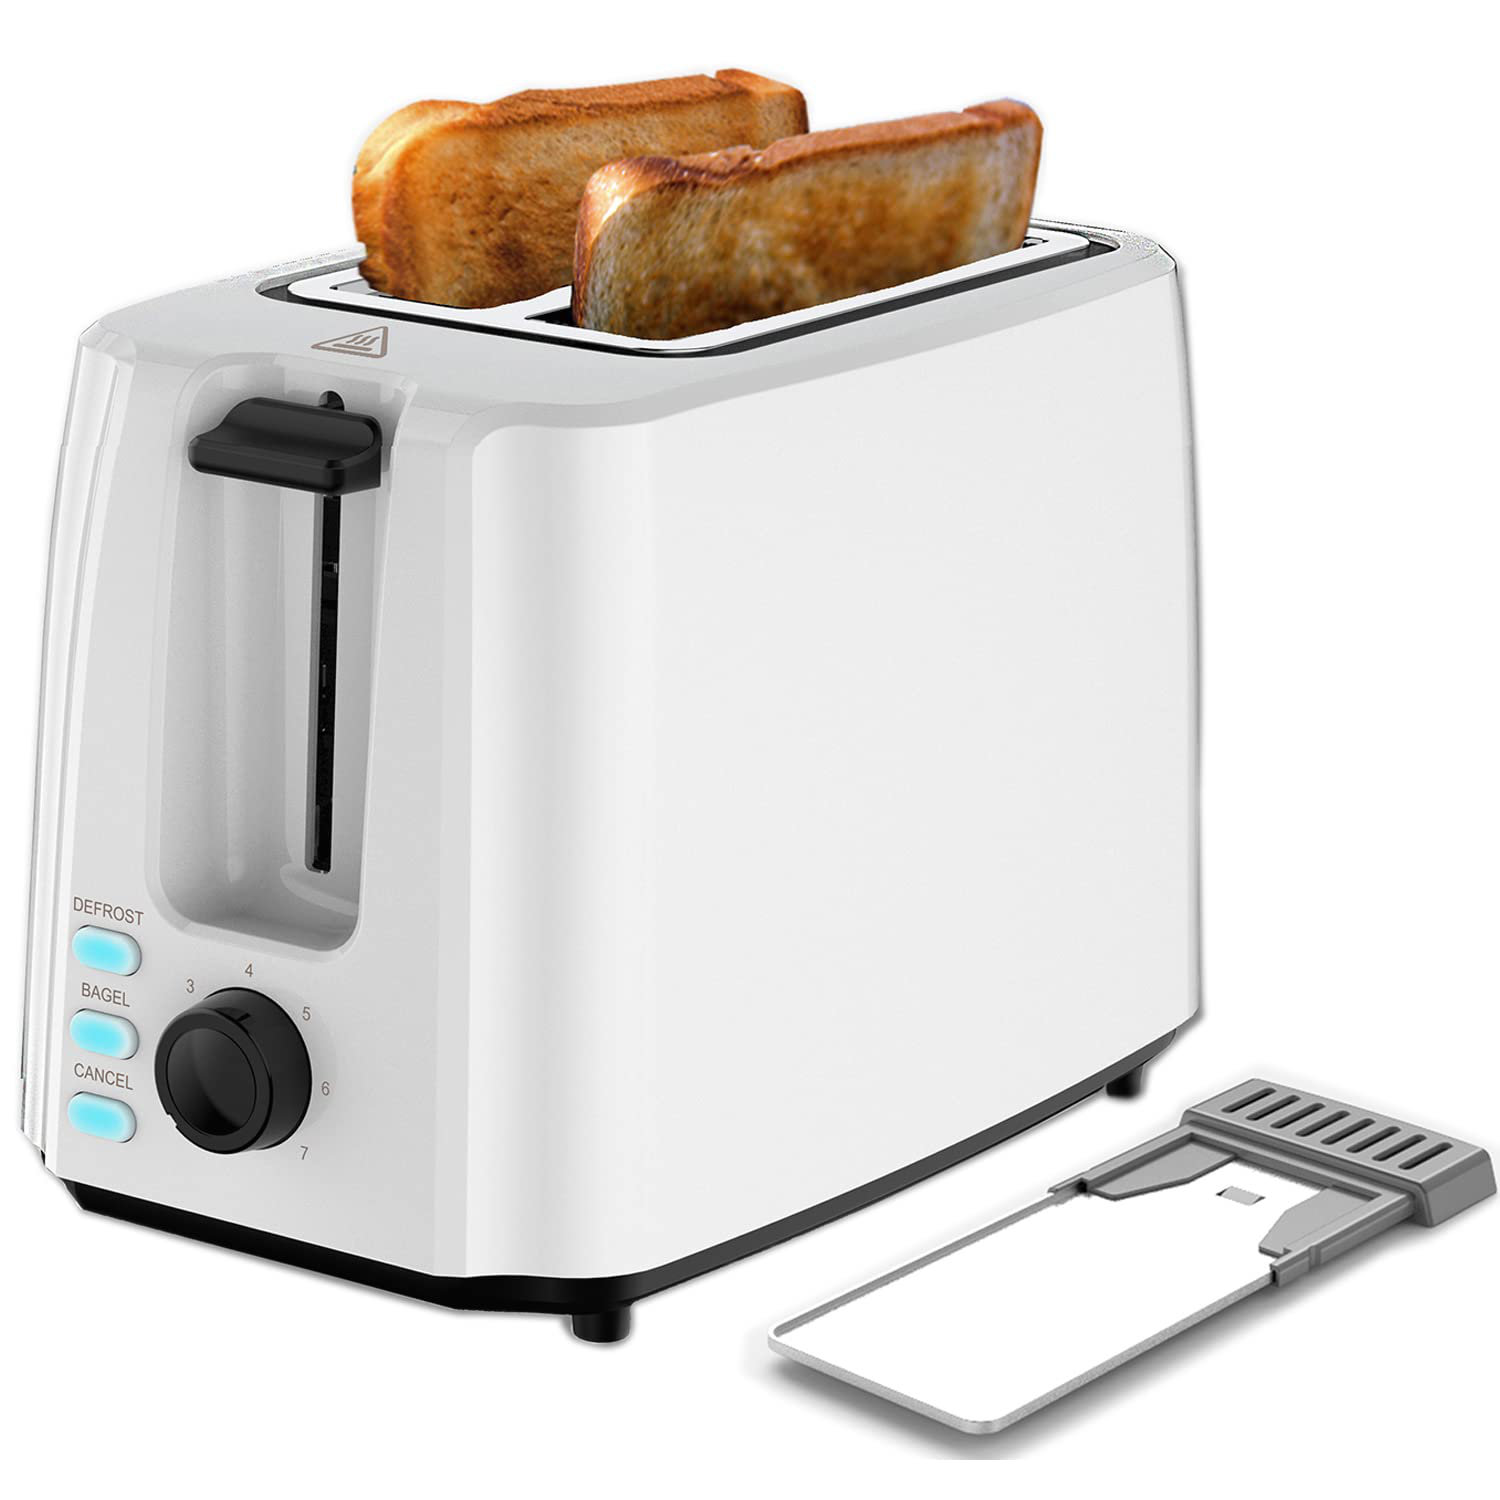 https://assets.wfcdn.com/im/24619427/compr-r85/2392/239290334/toaster-2-slice-best-rated-prime-toaster.jpg